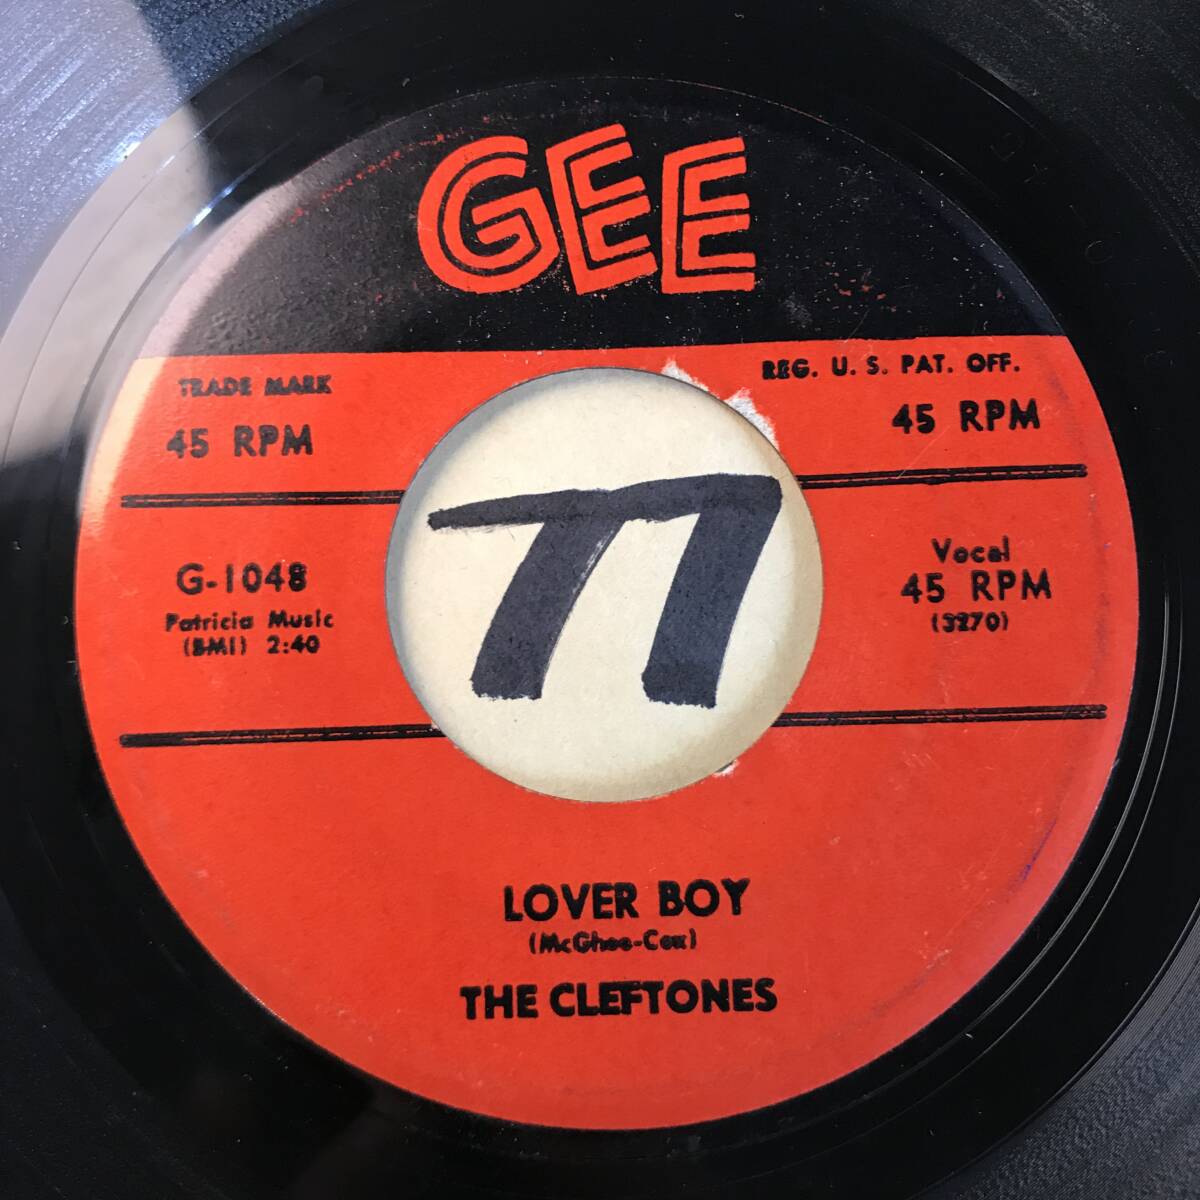  прослушивание рука *k упаковка DOO-WOP1958 THE CLEFTONES LOVER BOY / BEGINNERS AT LOVE двусторонний EX+